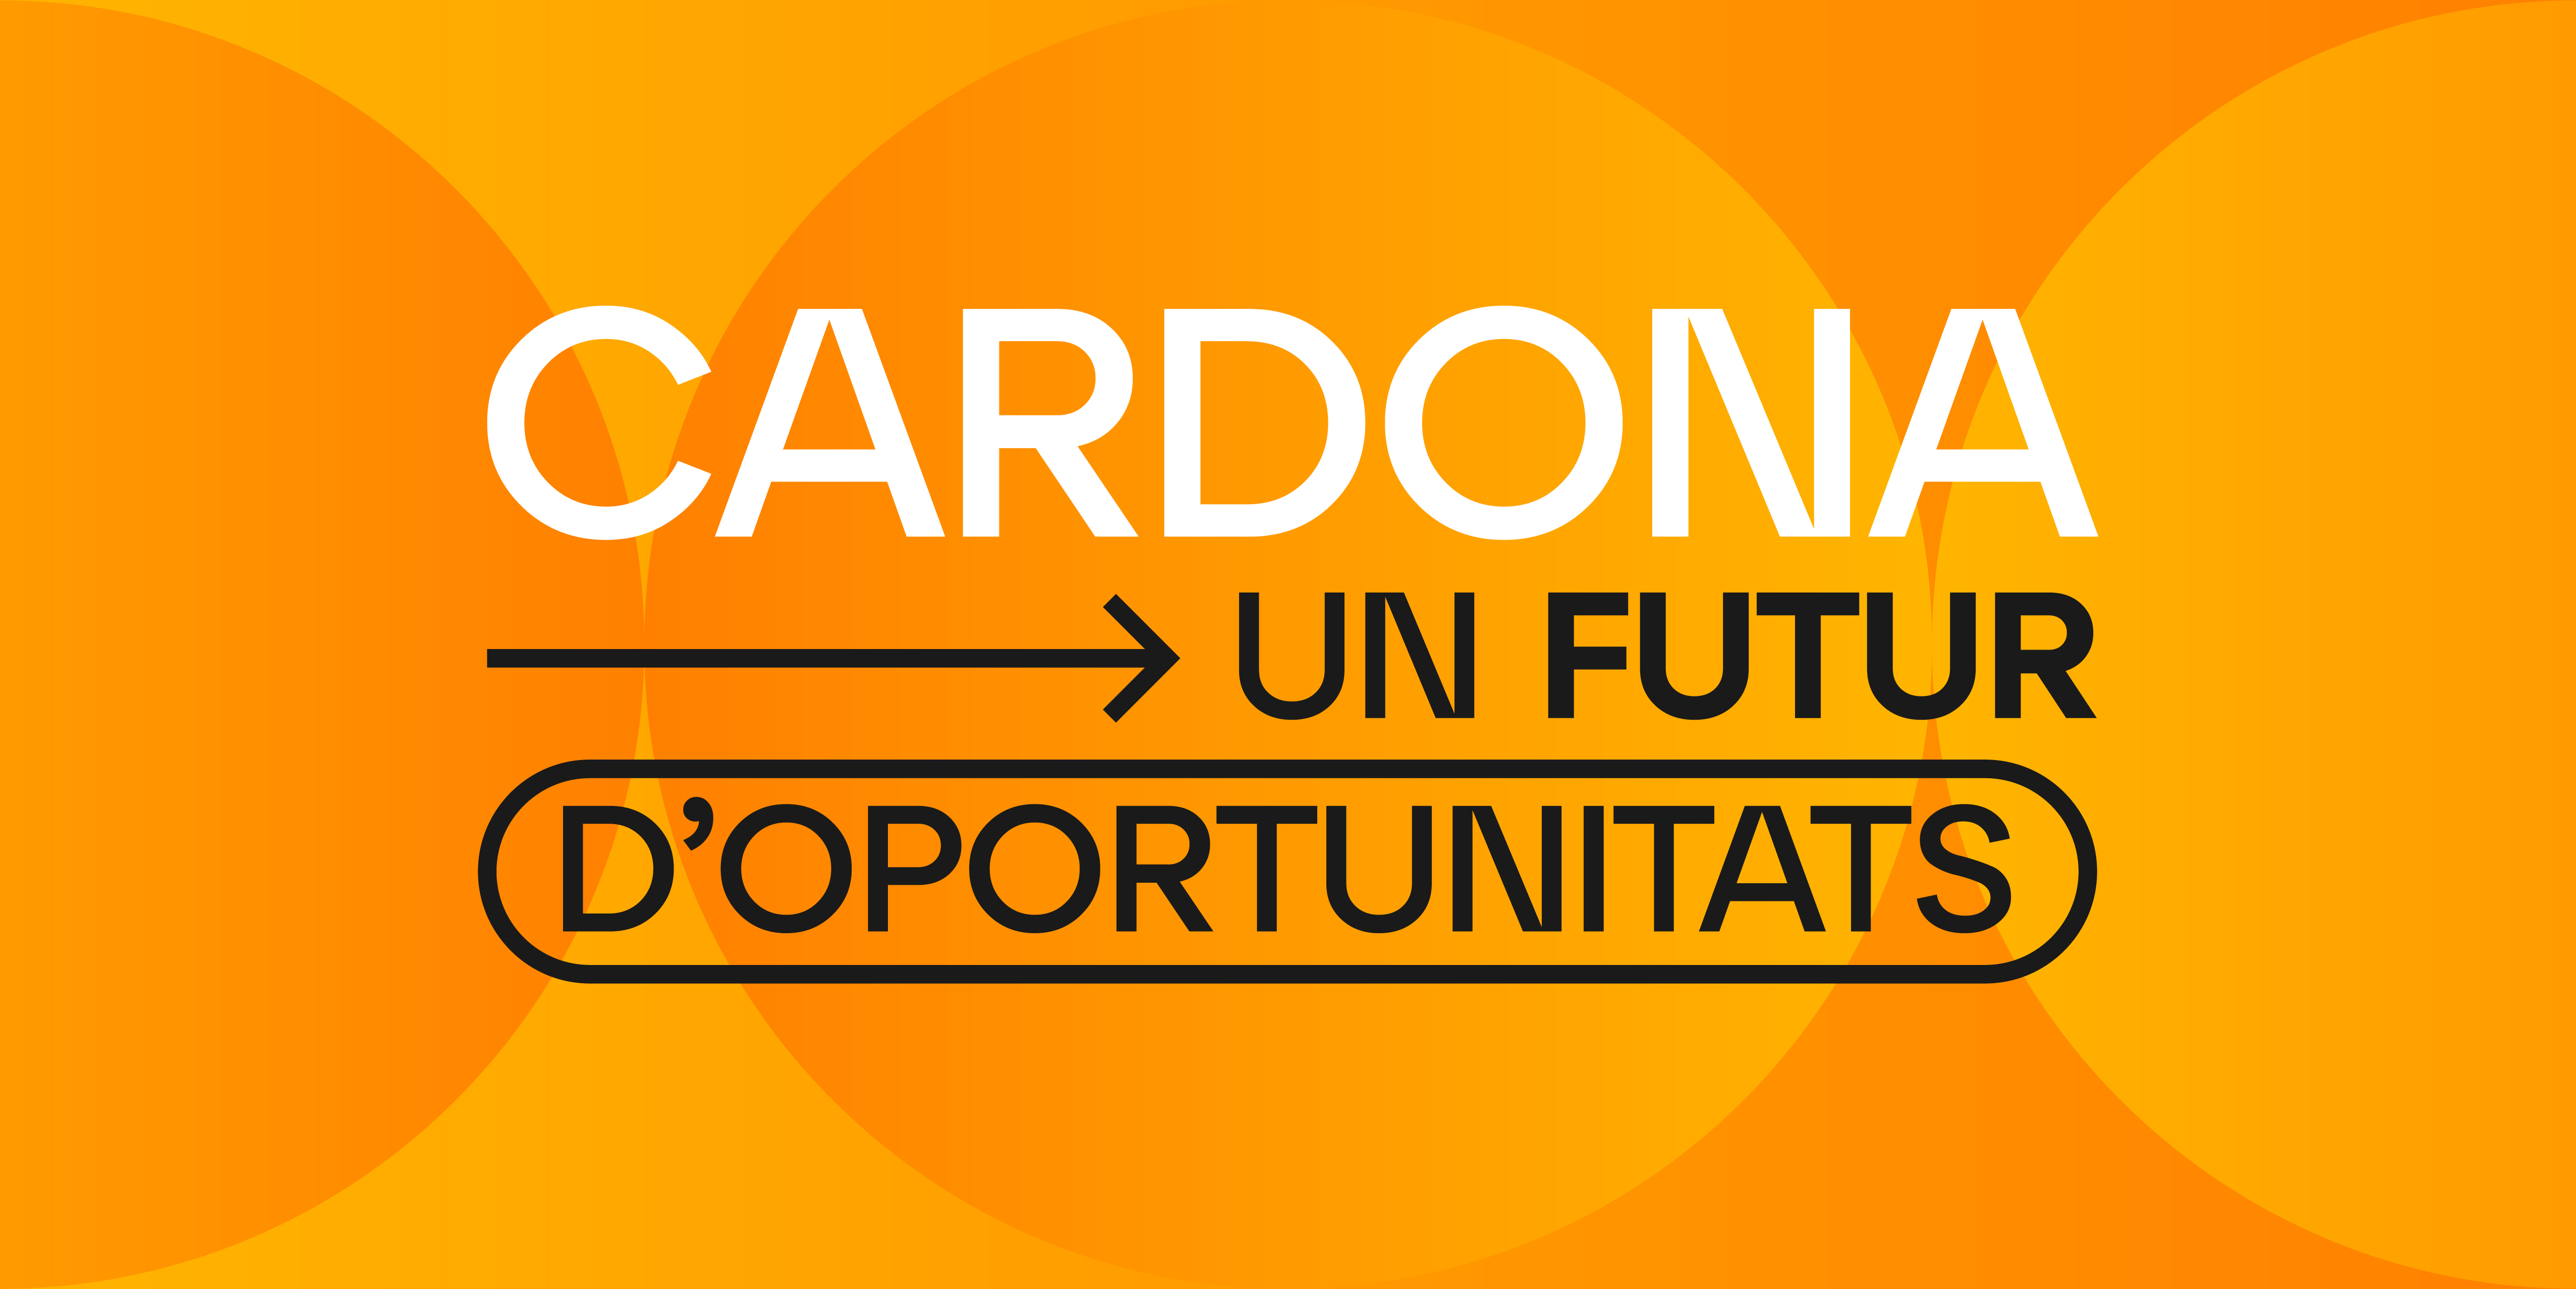 Cardona, un futur d'oportunitats